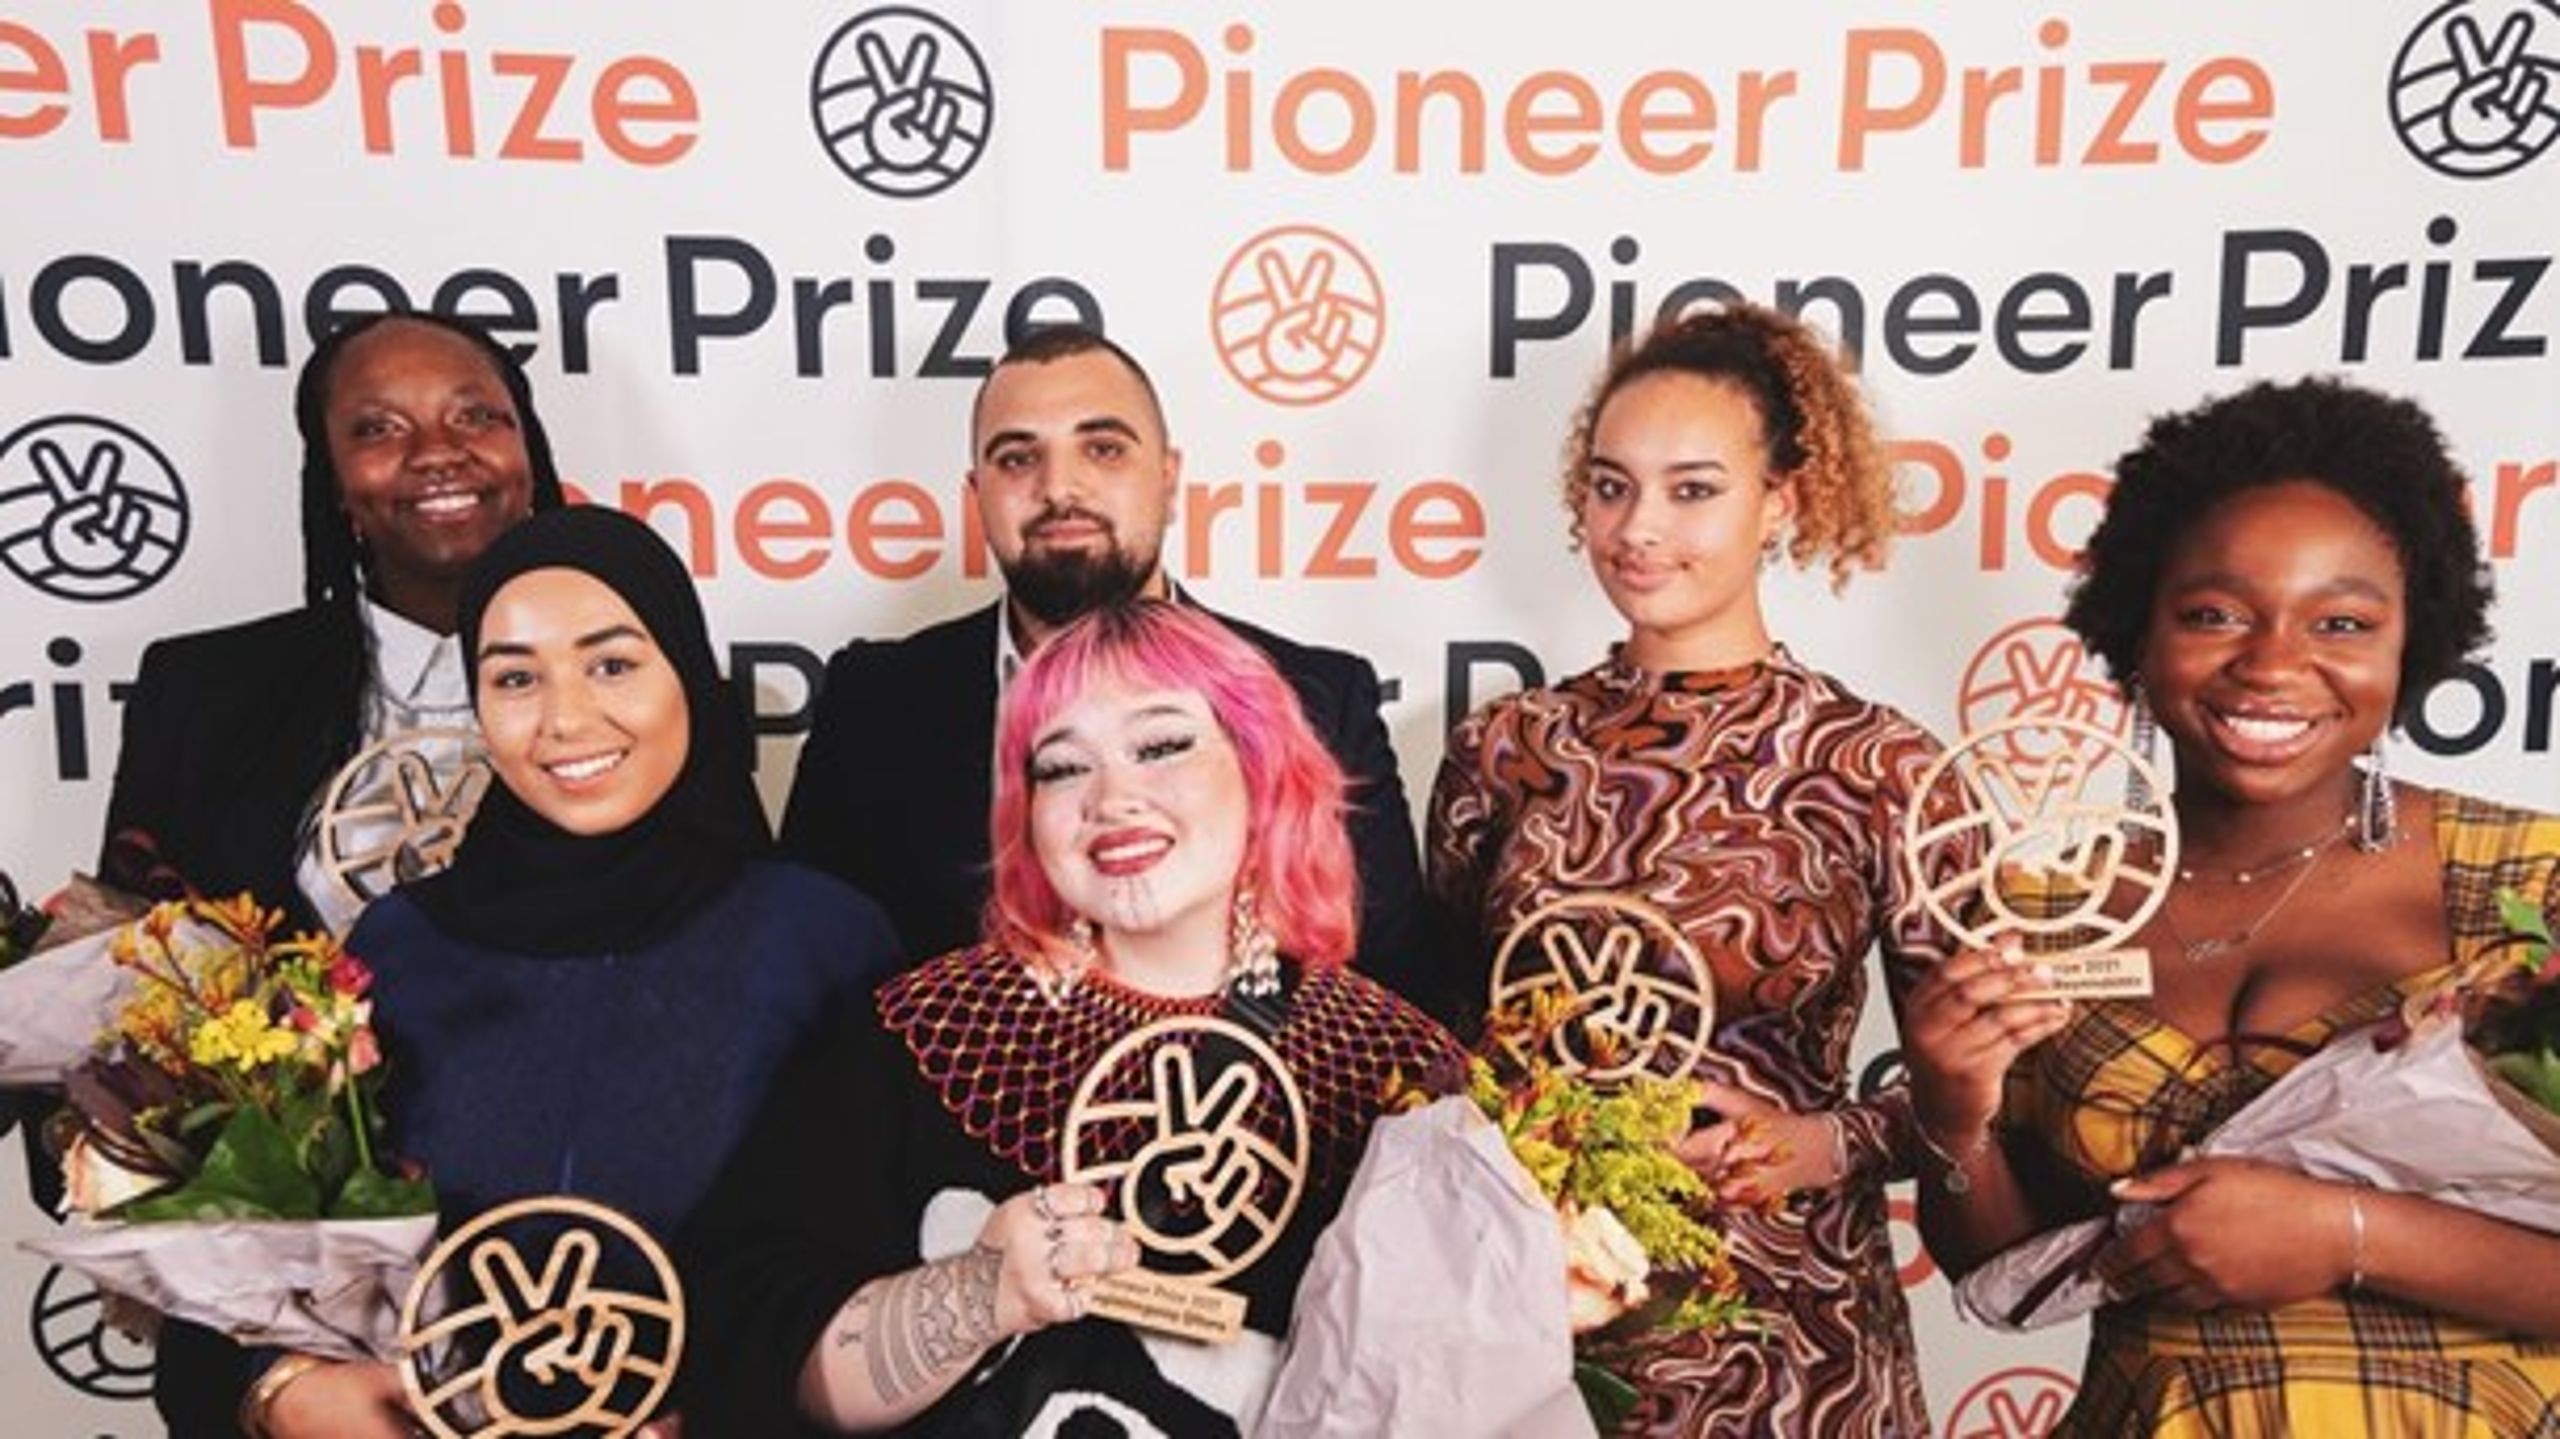 De seks vindere af Nordic Safe Cities' Pioneer Prize til prisuddelingen den 23. september på Sveriges ambassade i København. (Foto: Nordic Safe Cities)